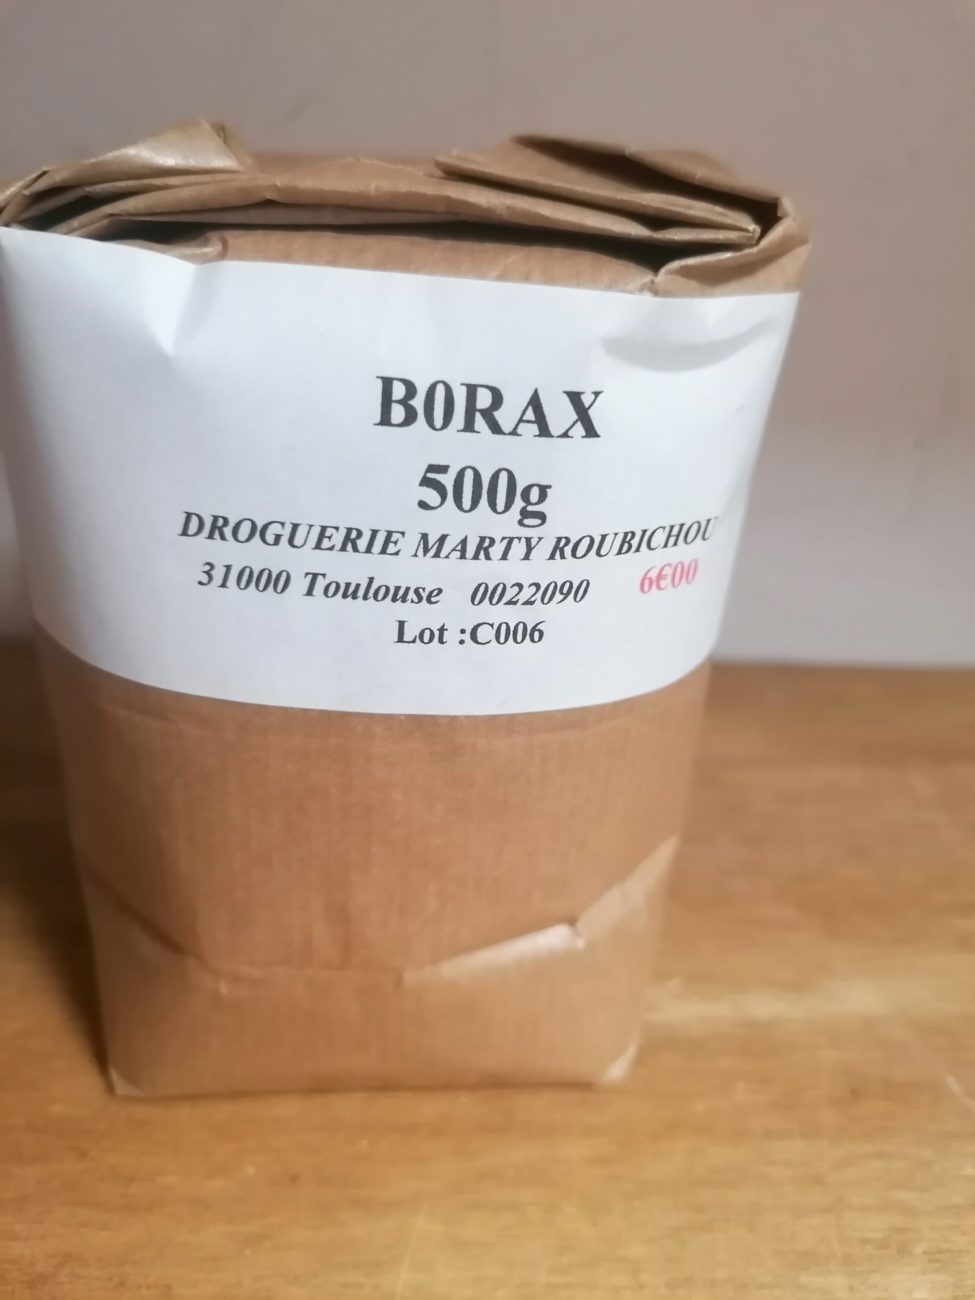 Borax 500g à acheter sur Toulouse Boutiques, vos commerces